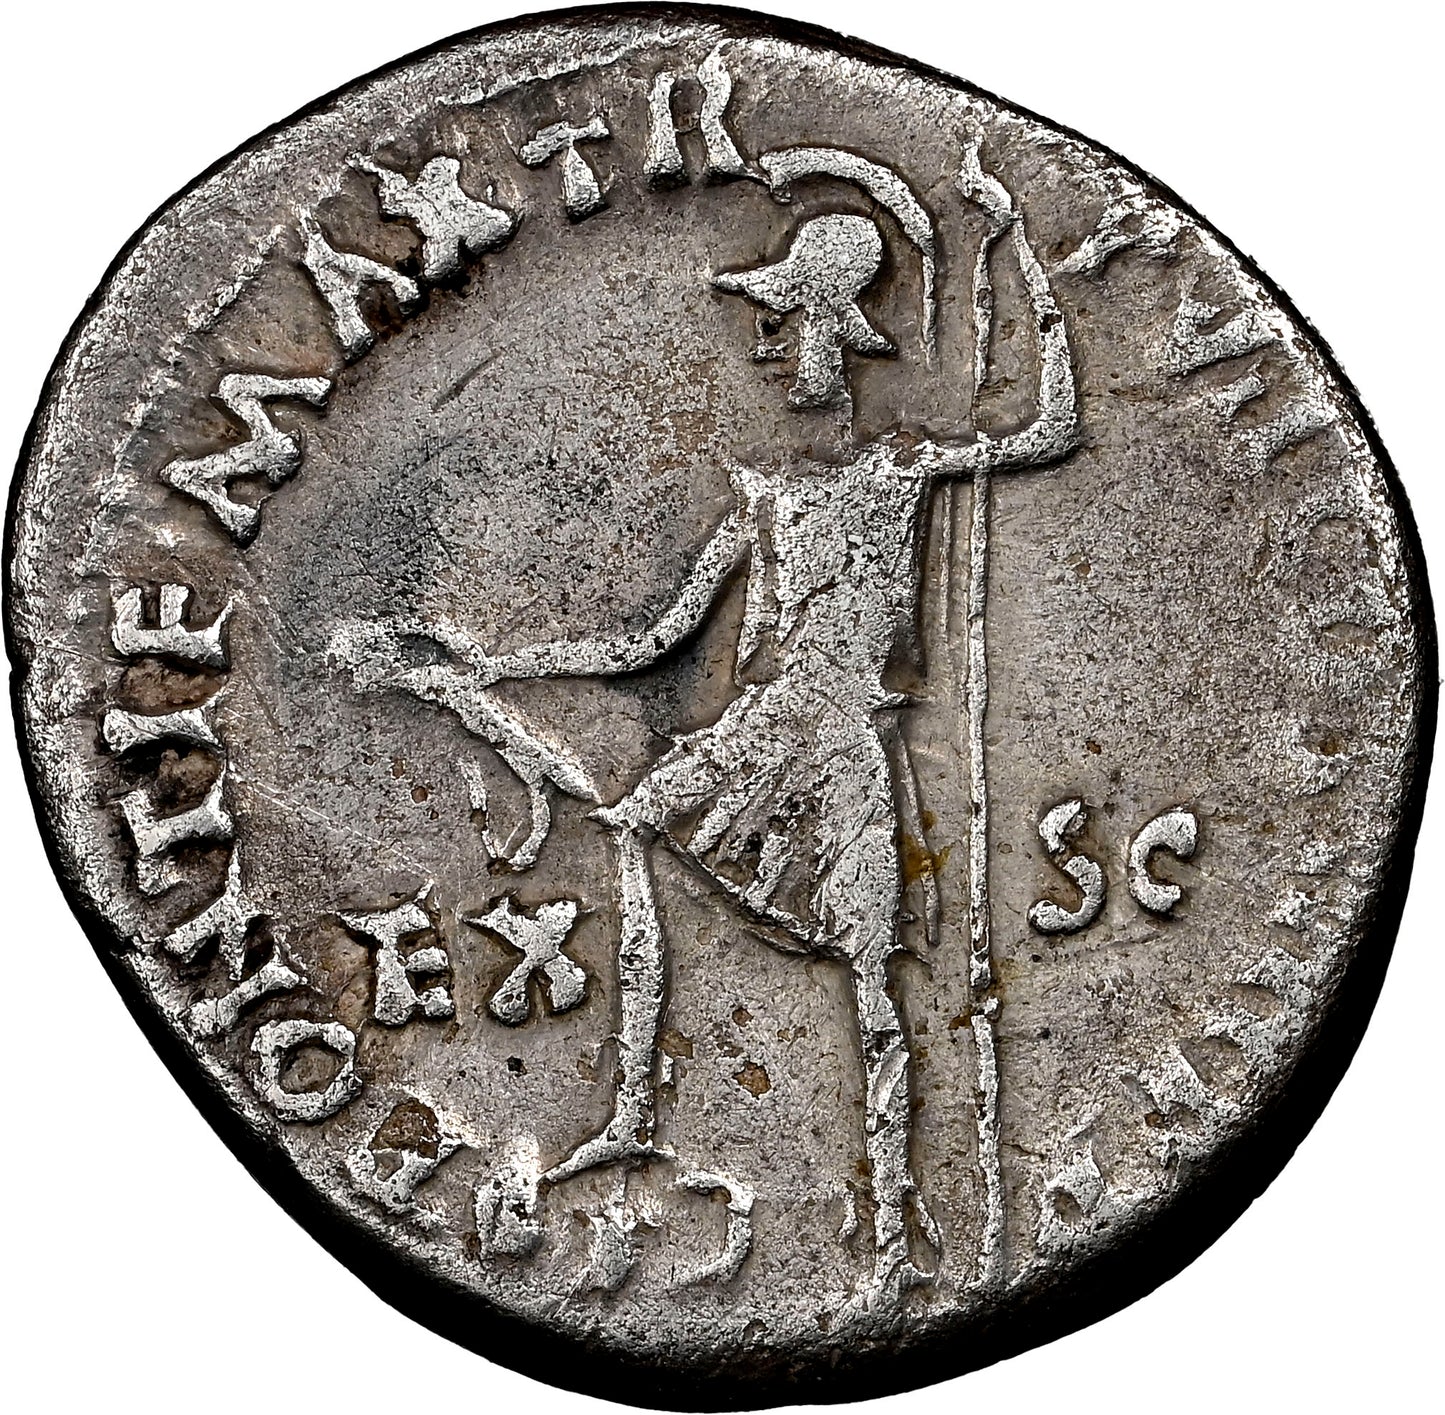 Roman Empire - Nero - Silver Denarius - NGC Ch F - RIC:26